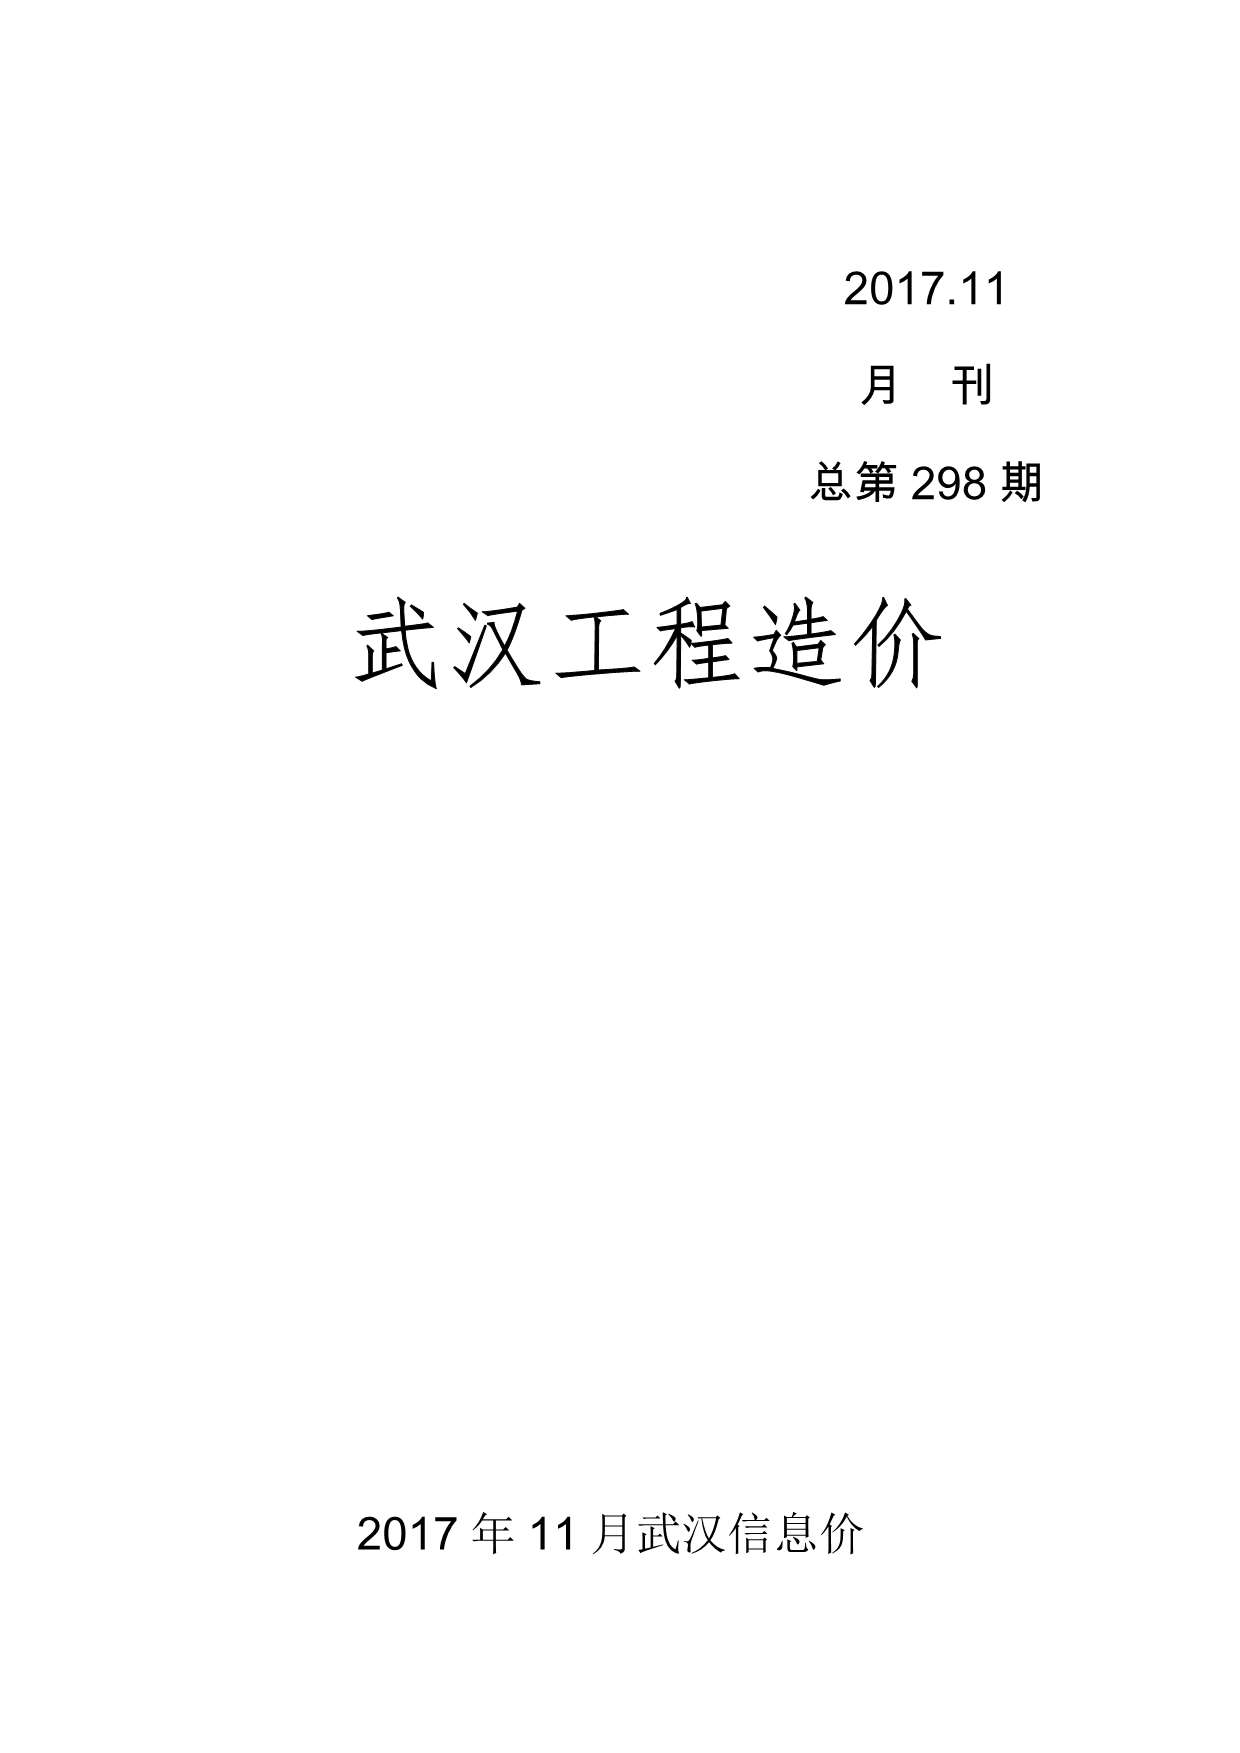 武汉市2017年11月工程信息价_武汉市信息价期刊PDF扫描件电子版